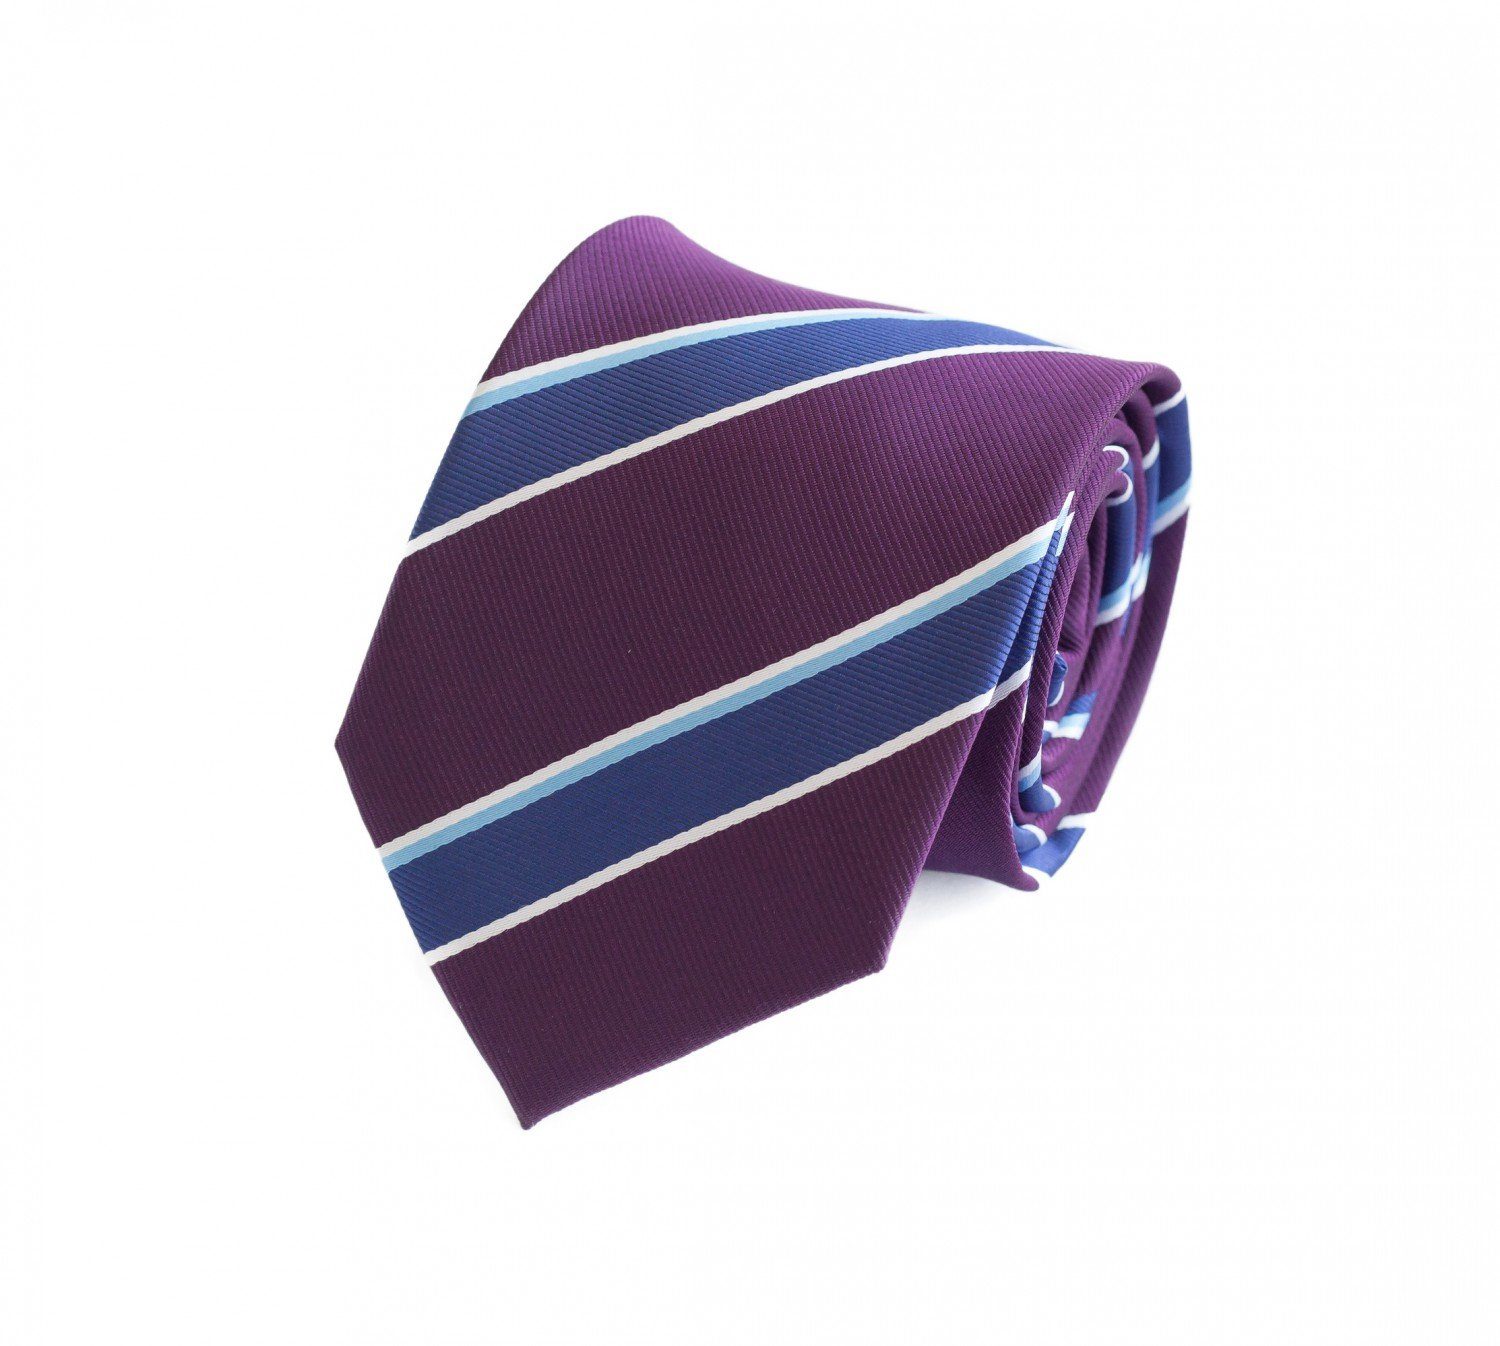 Fabio Farini Schlips Krawatte Breit - Violett/Blau/Weiß in Farbton Breite mit Krawatten Herren (ohne Gestreift) (8cm), 8cm Lila Box